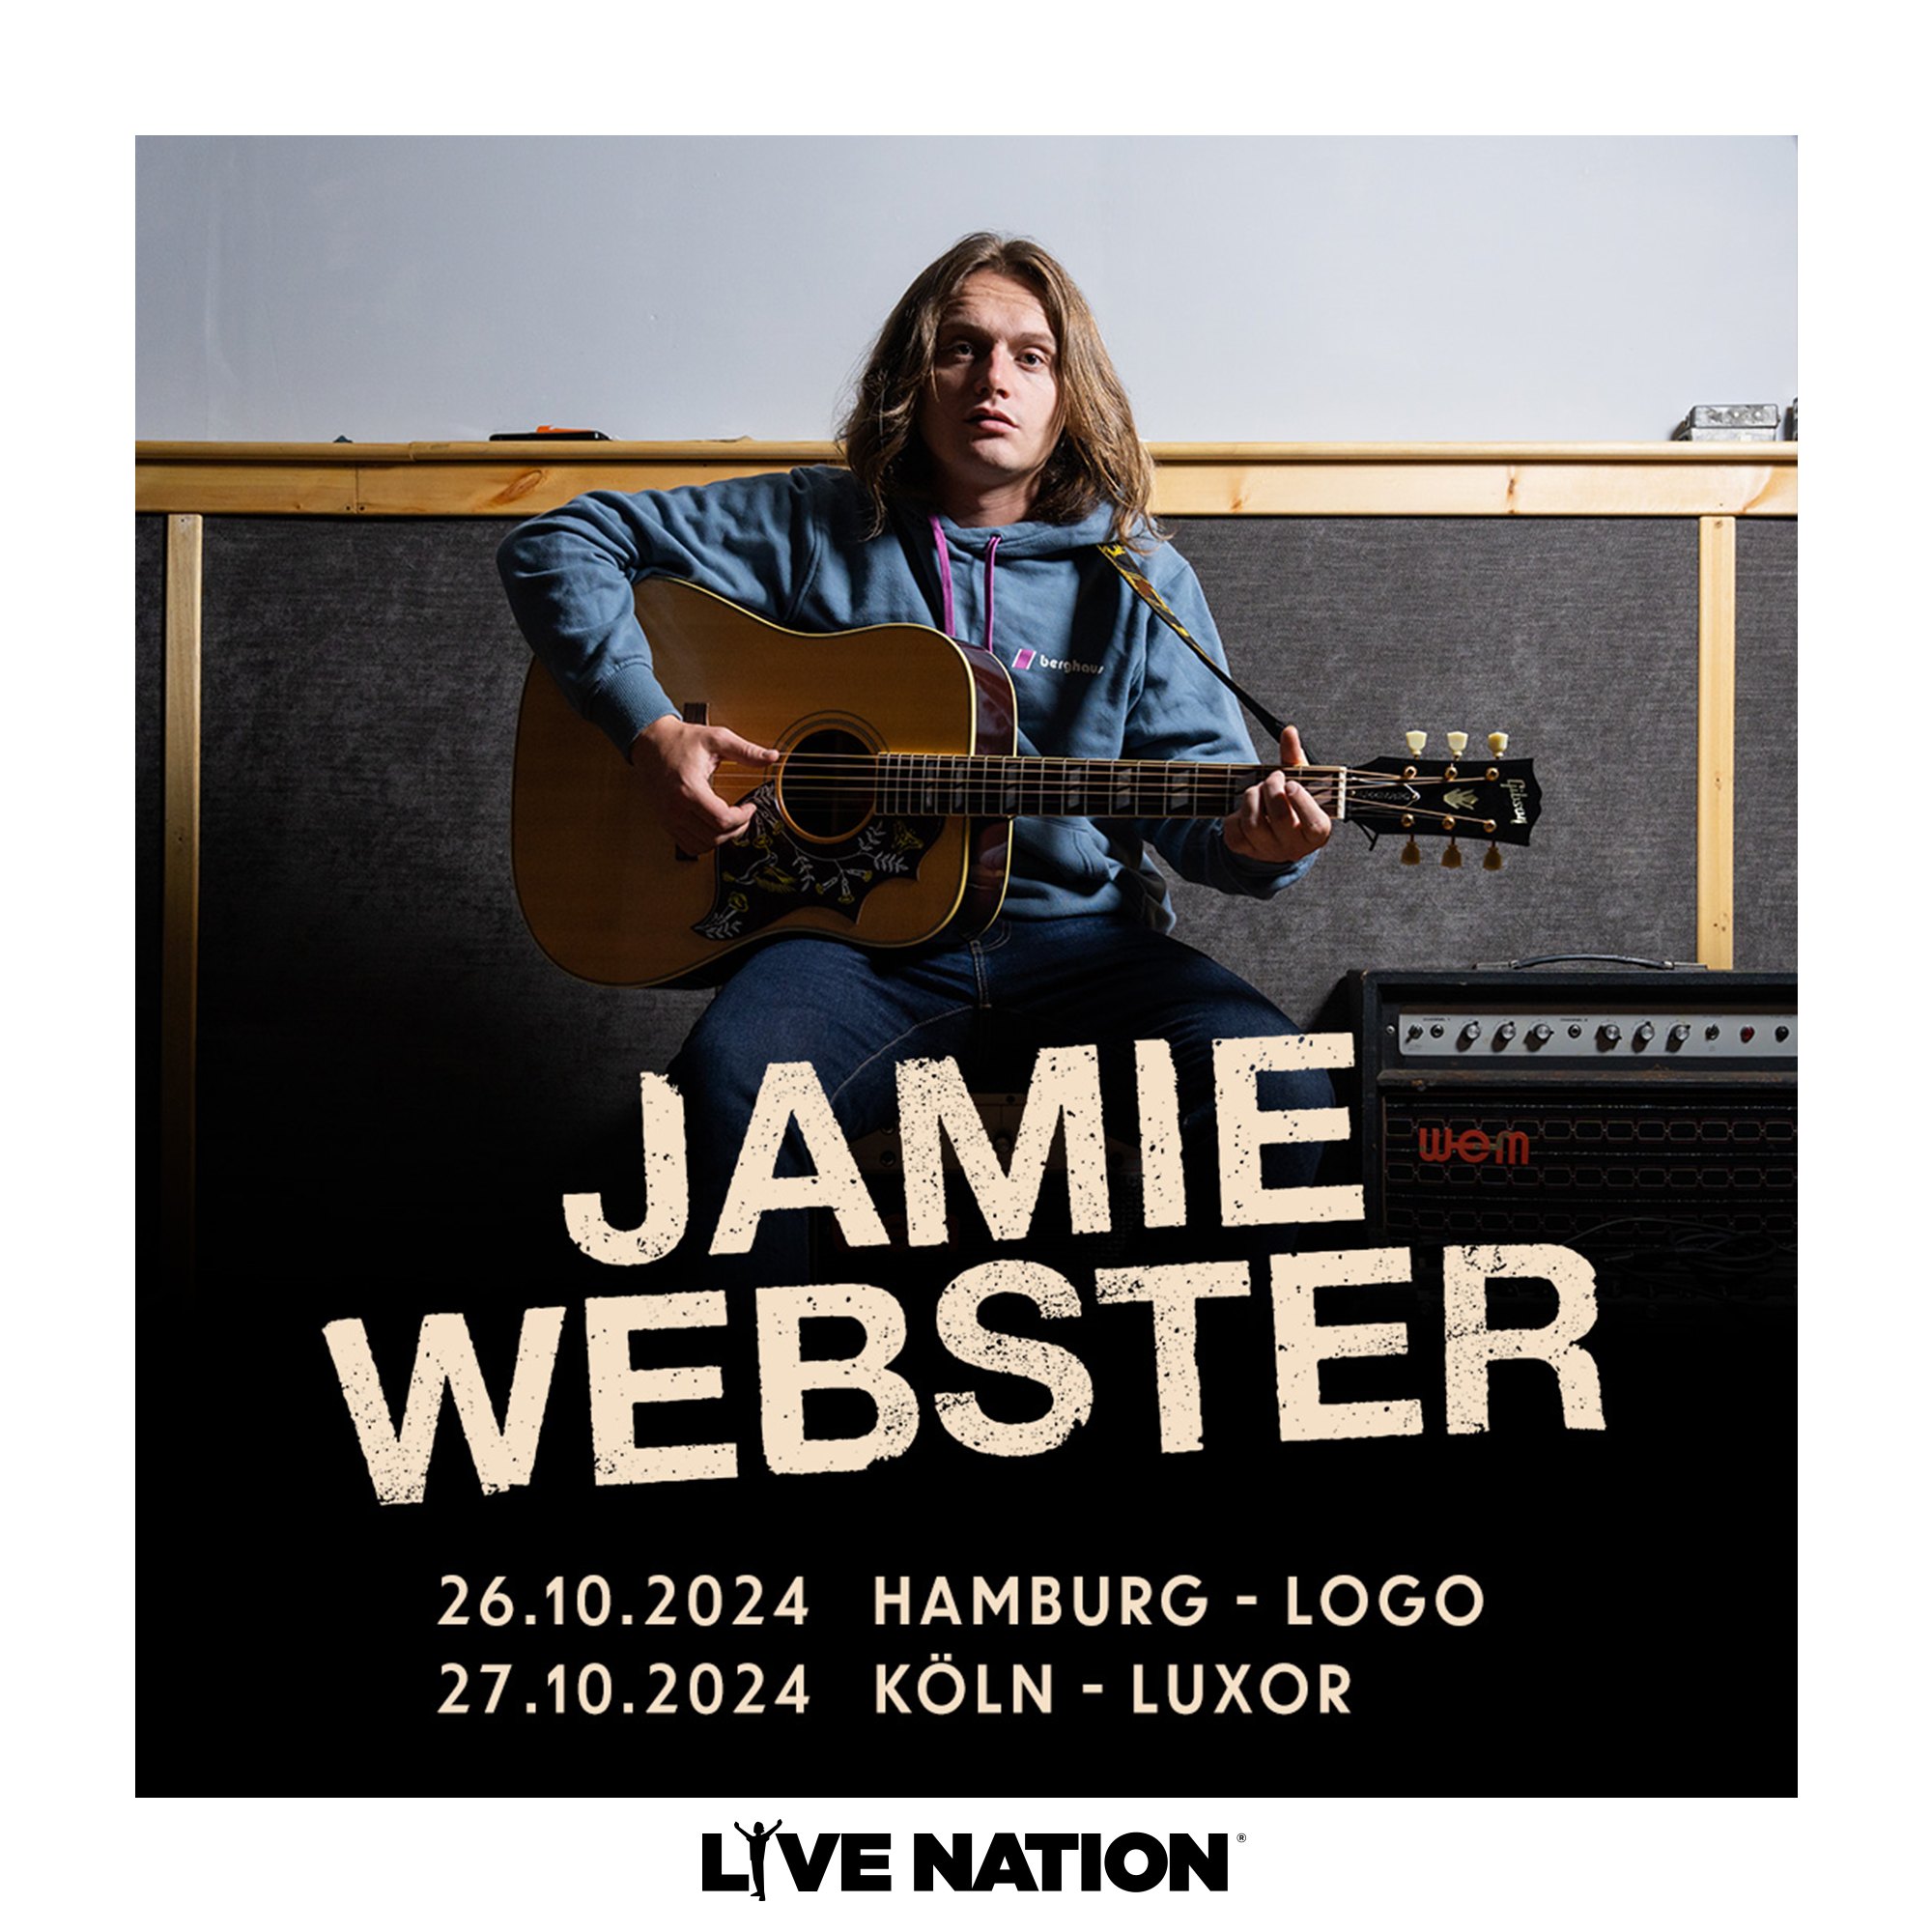 Jamie Webster in der LOGO Hamburg Tickets